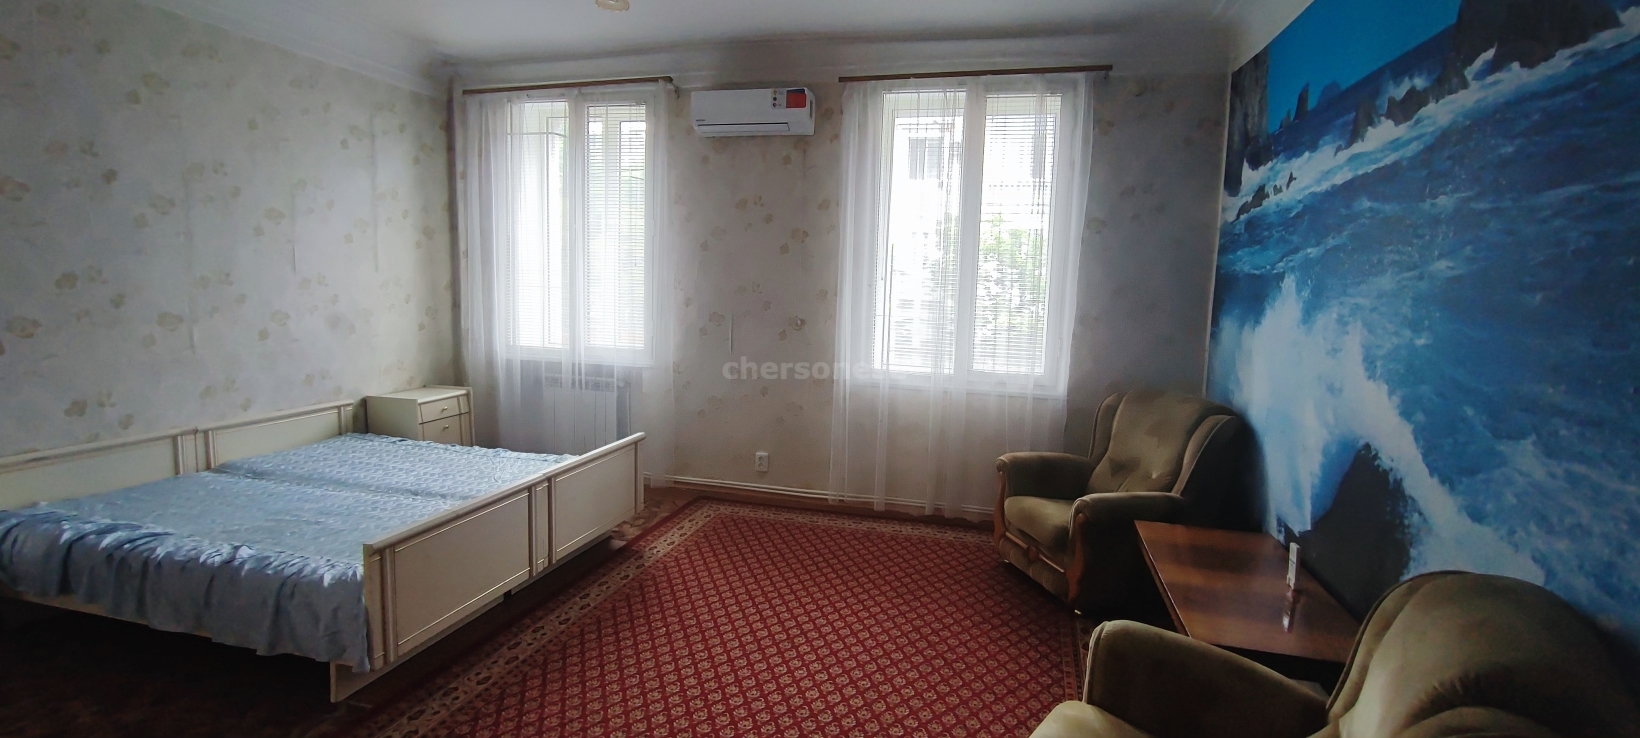 Аренда 3-комнатной квартиры, Севастополь, Большая Морская улица,  д.48